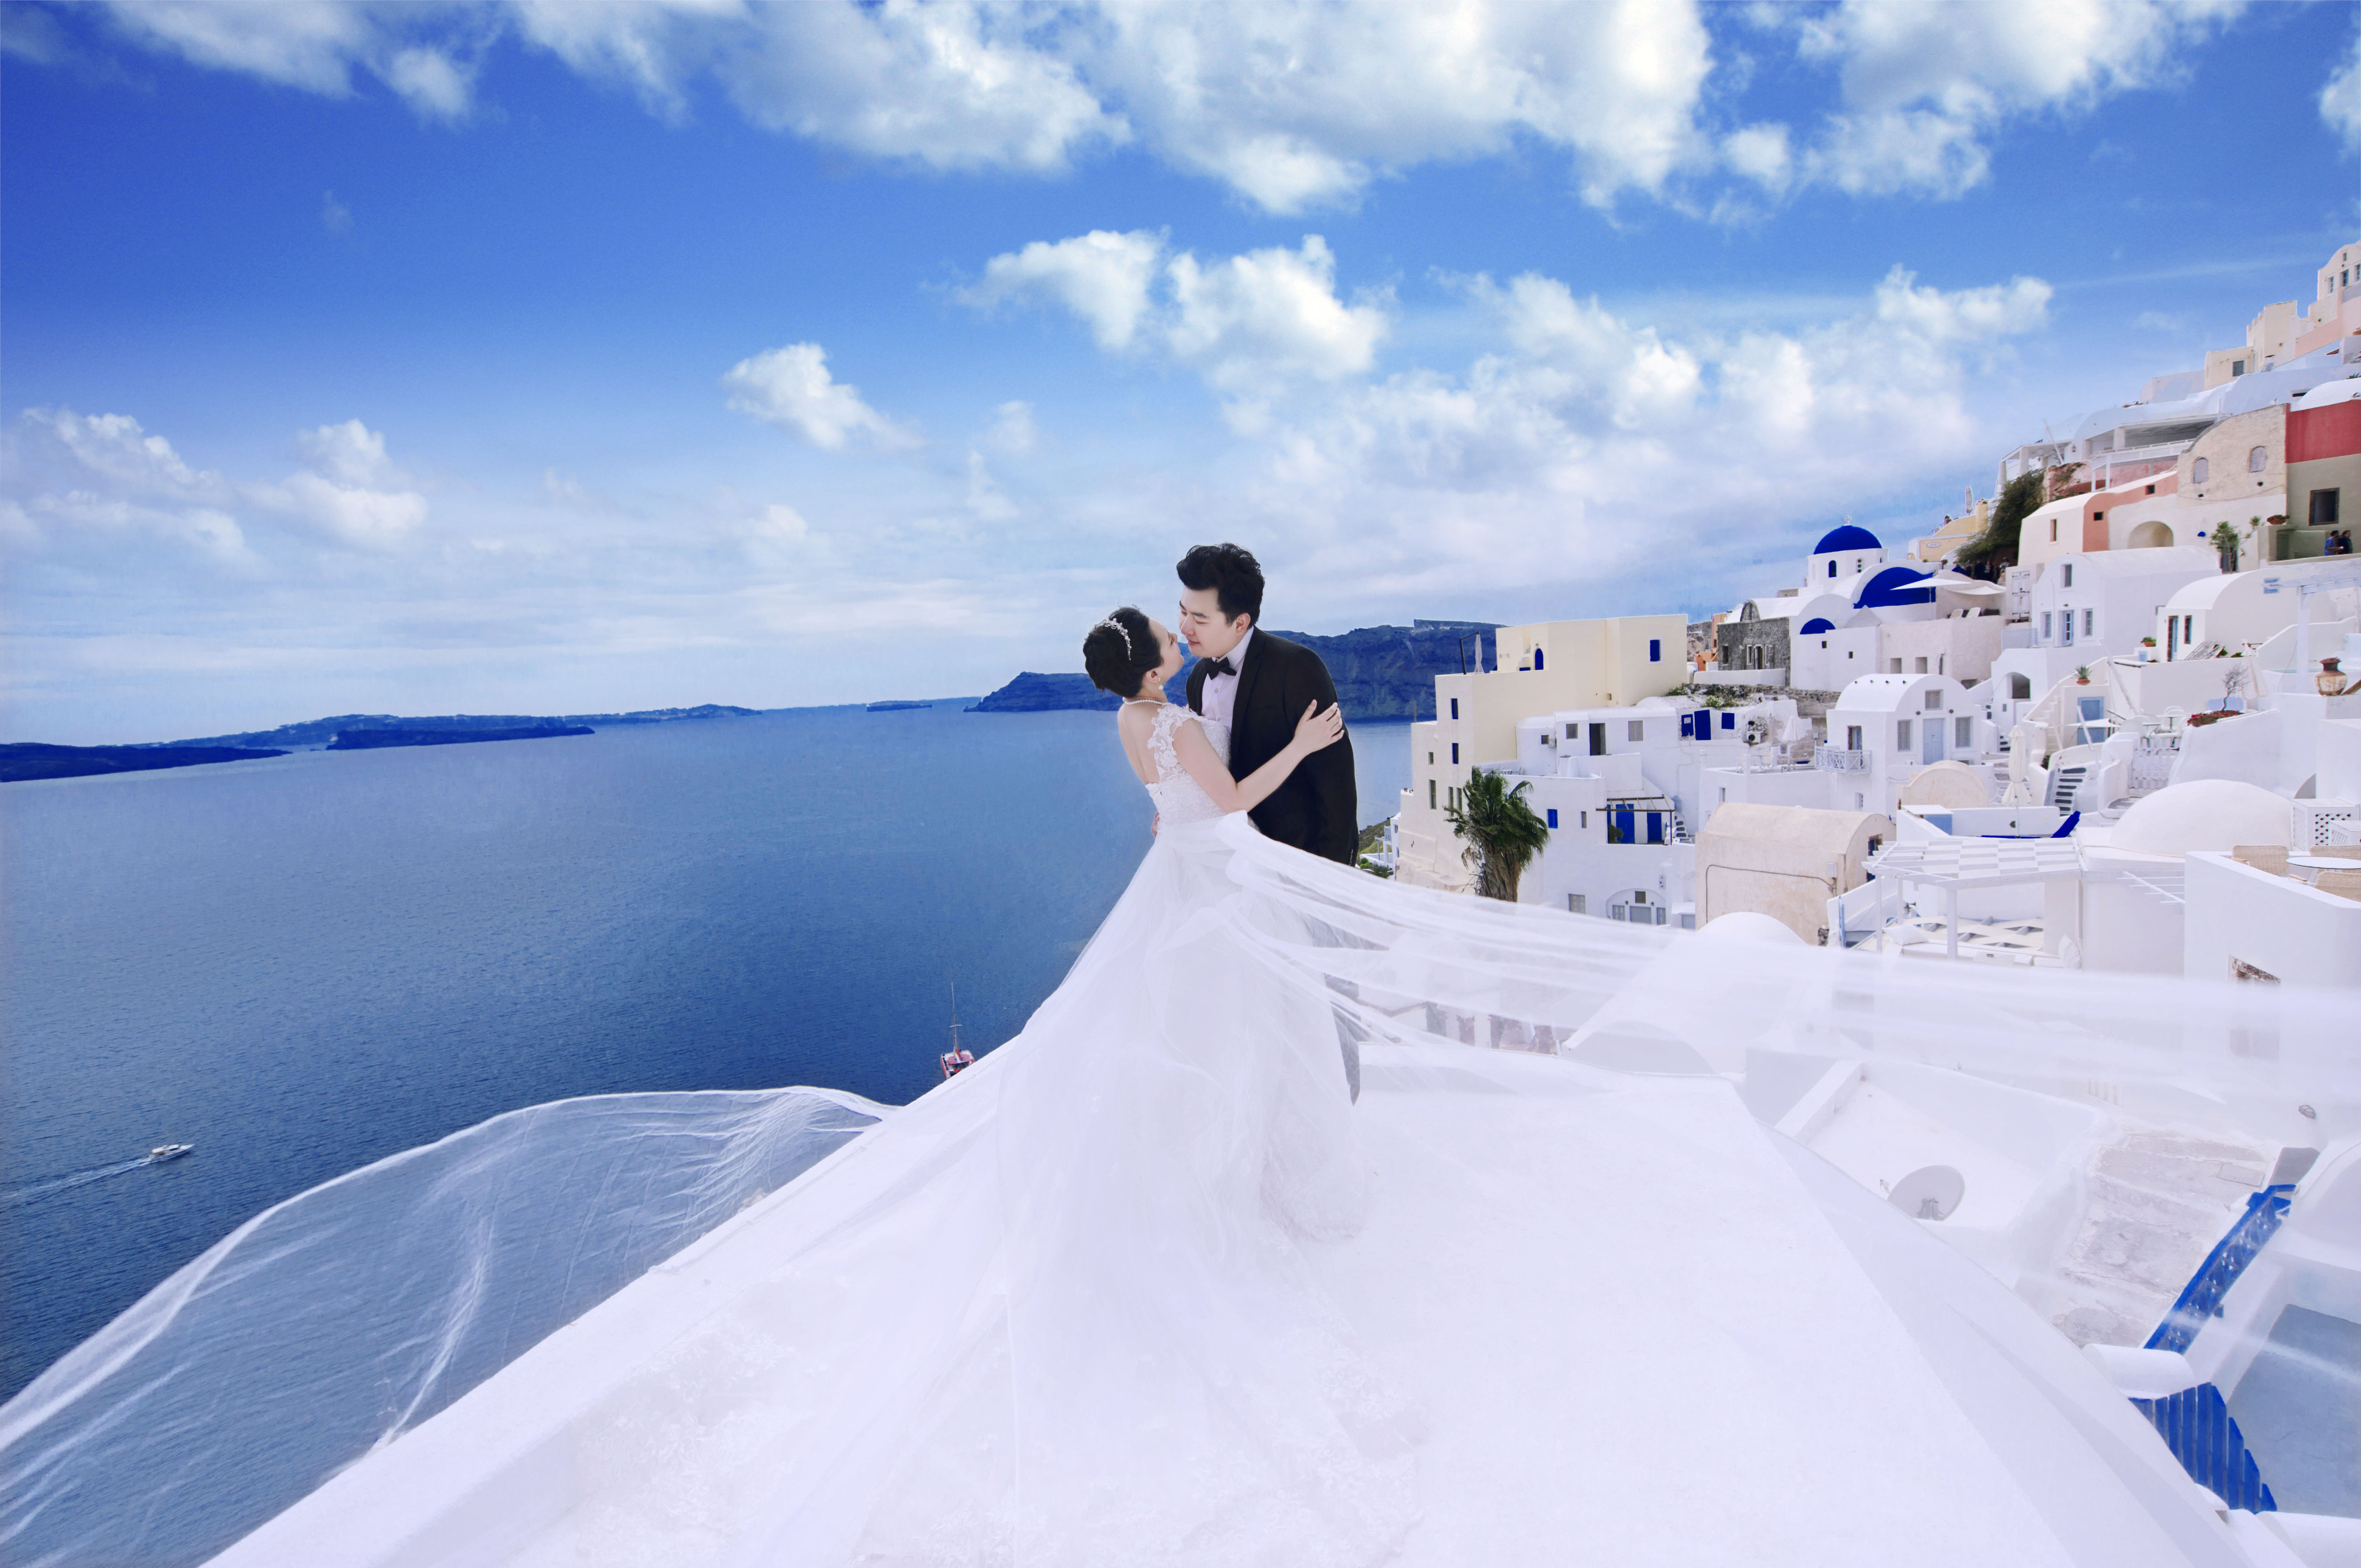 希腊拍婚纱_迪丽热巴希腊婚纱图片(2)